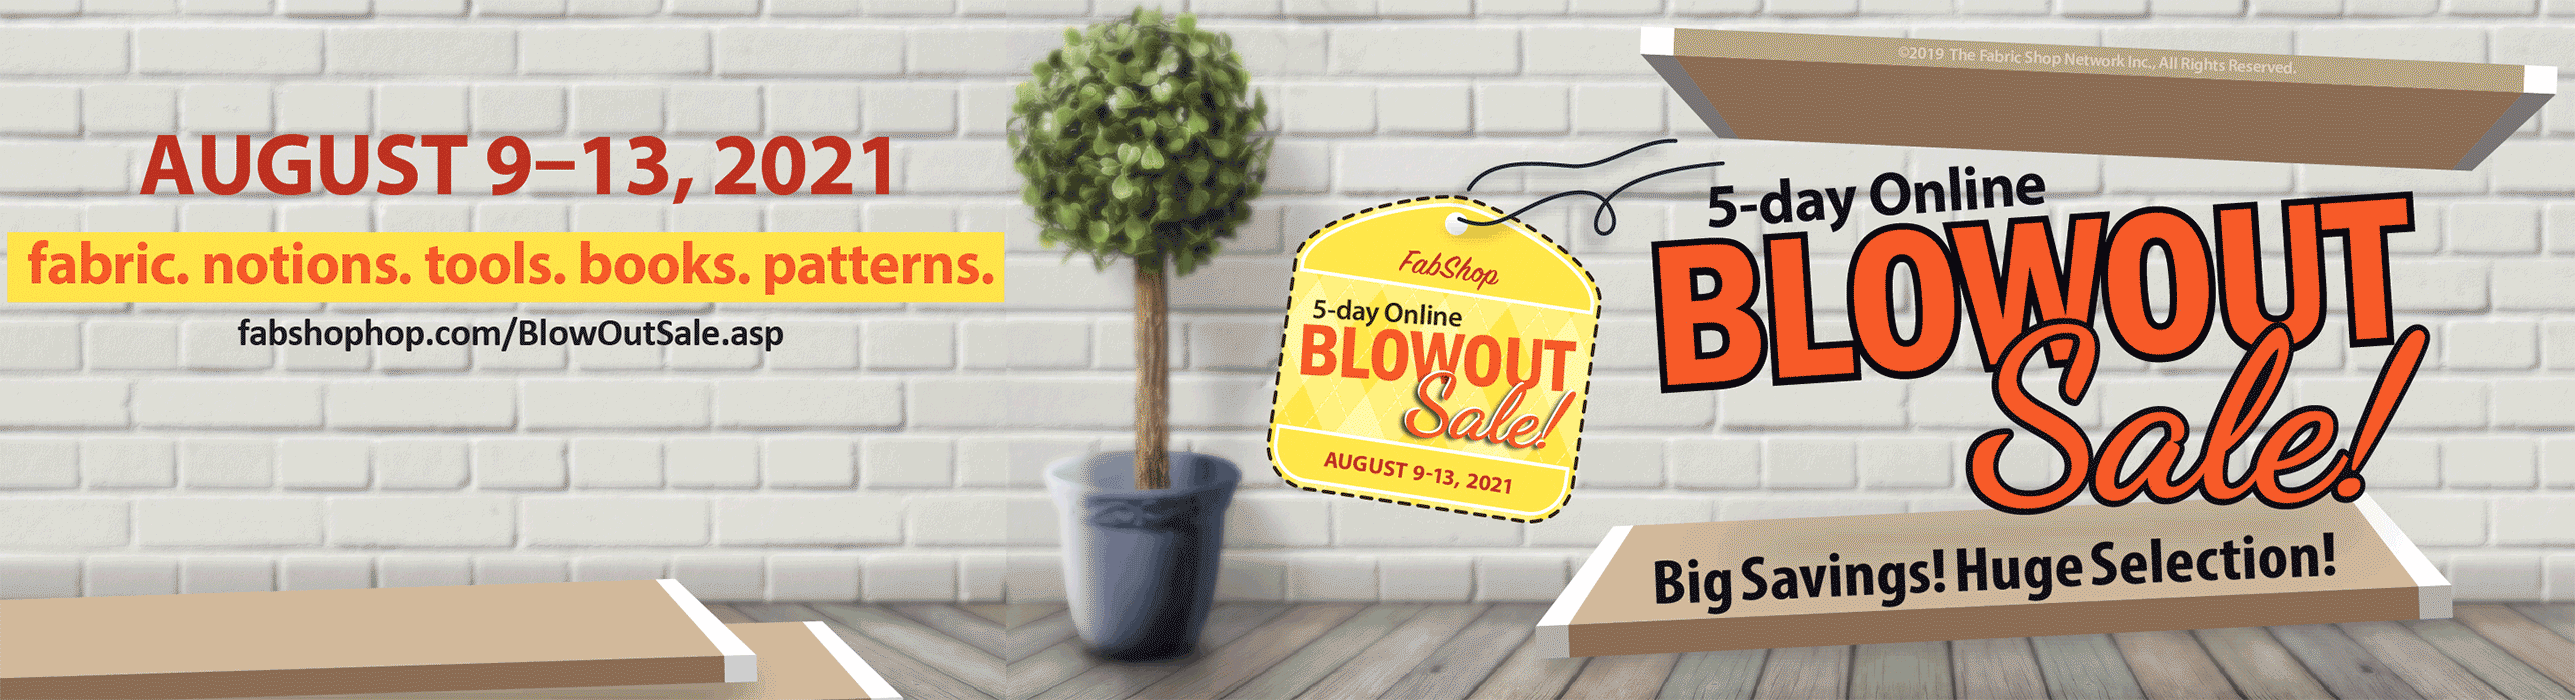 BlowOut Sale - August 9-13, 2021